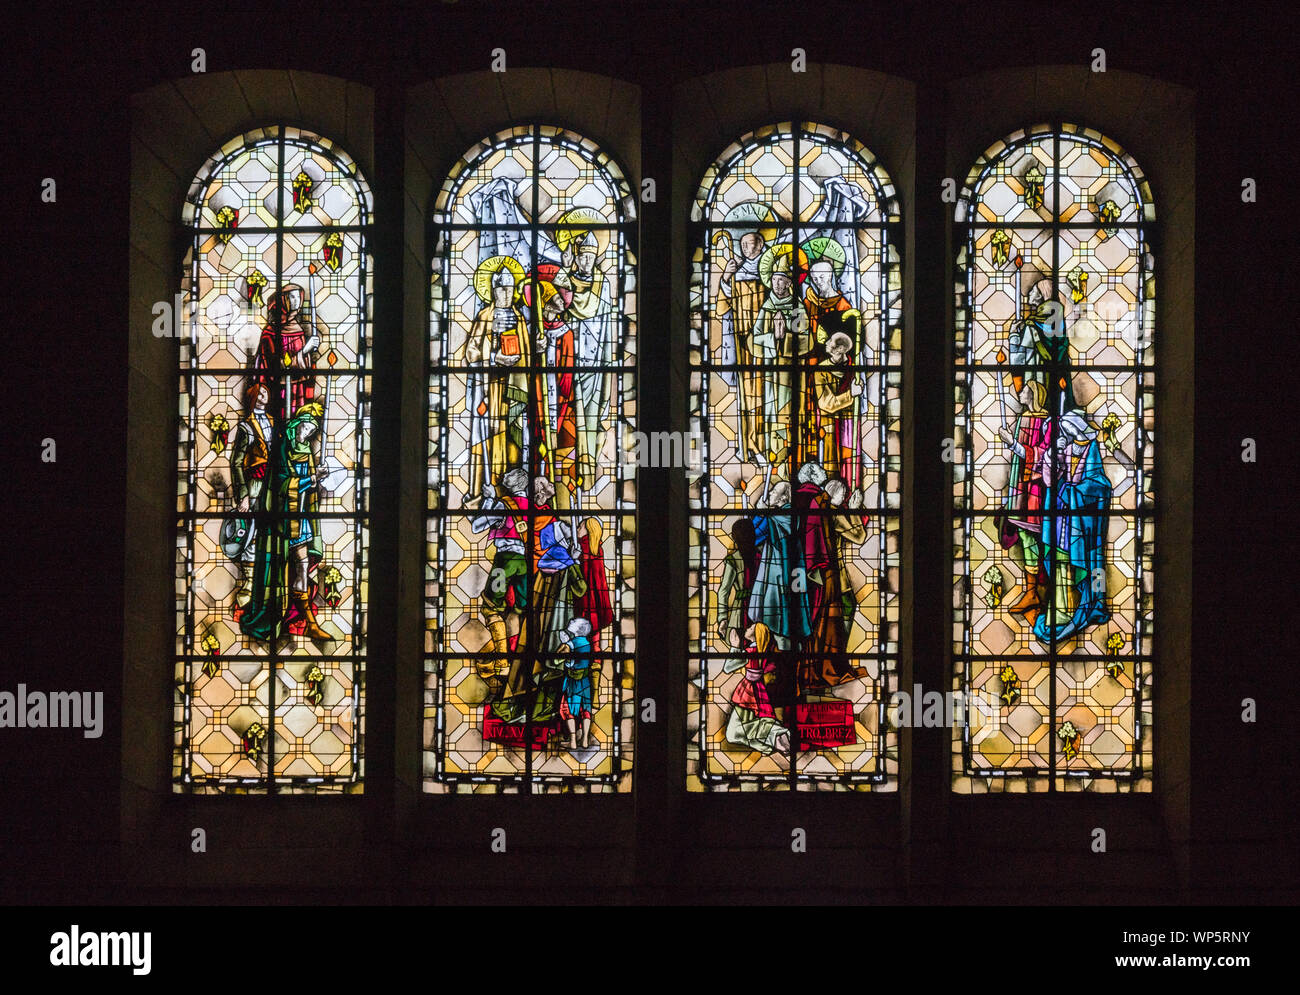 Eine detaillierte Ansicht der Glasfenster in der Kathedrale von Saint Malo in der Bretagne in Frankreich Stockfoto